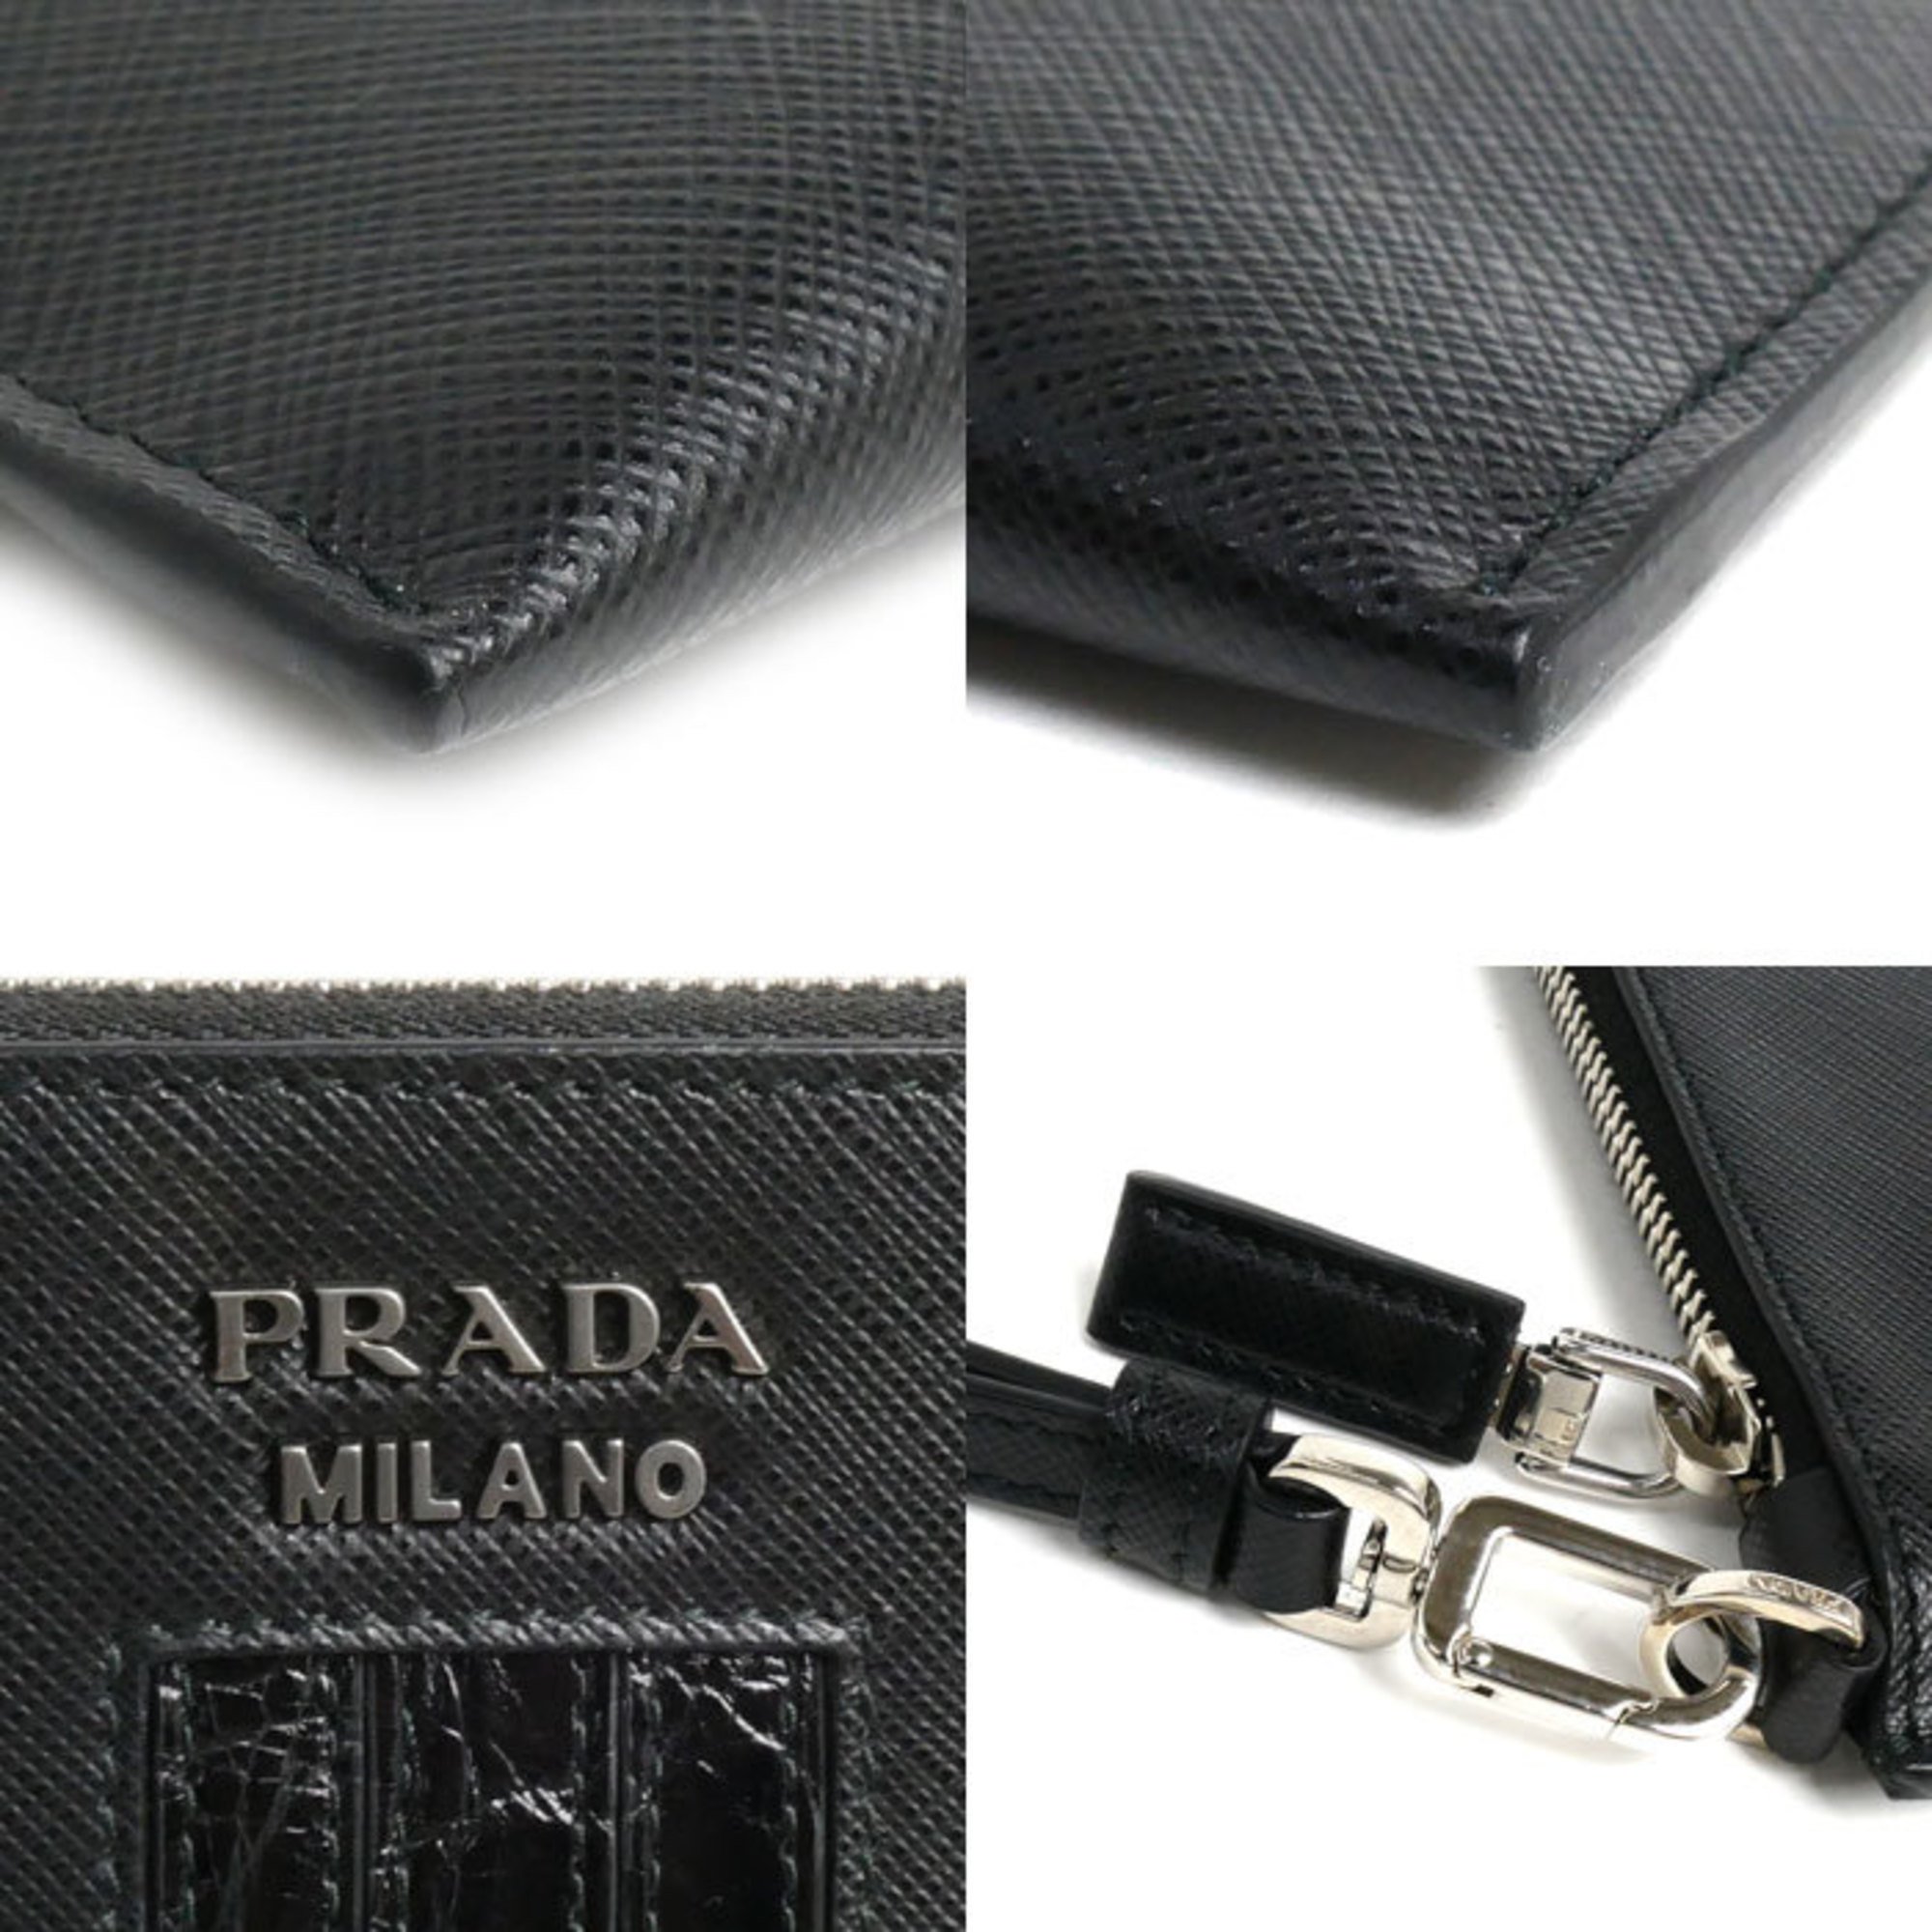 PRADA Prada Saffiano Clutch Bag with Wristlet Black 2NH005 2EB3 F0002 Men's